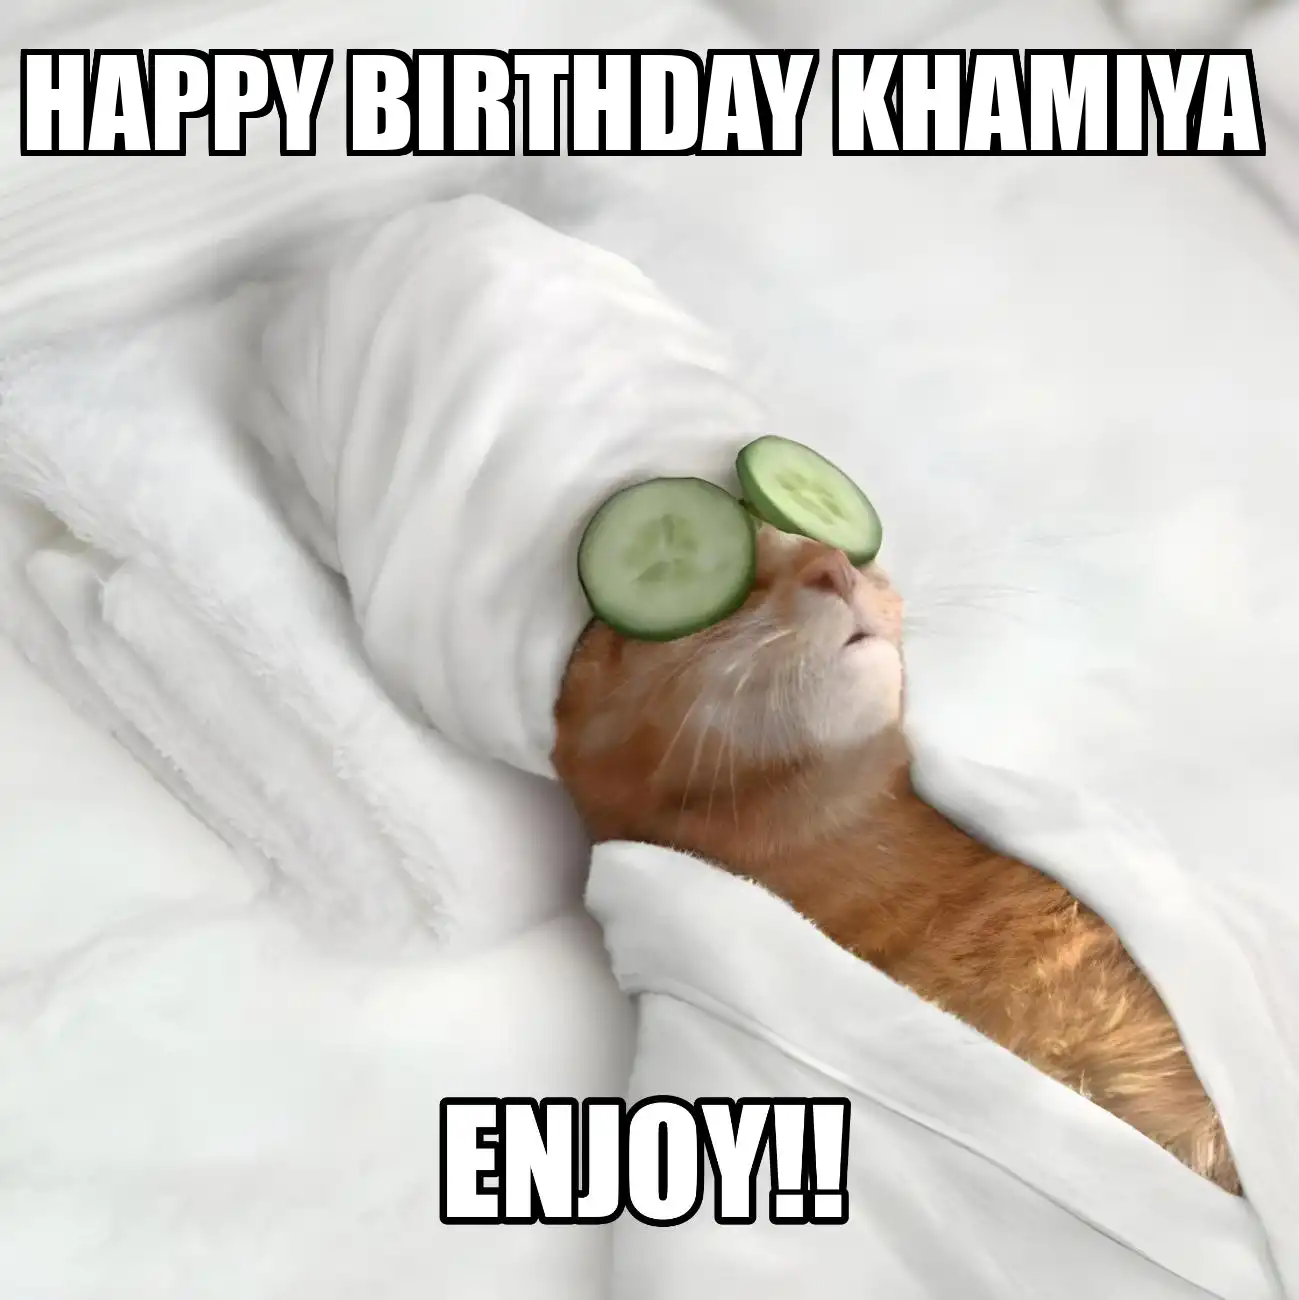 Happy Birthday Khamiya Enjoy Cat Meme